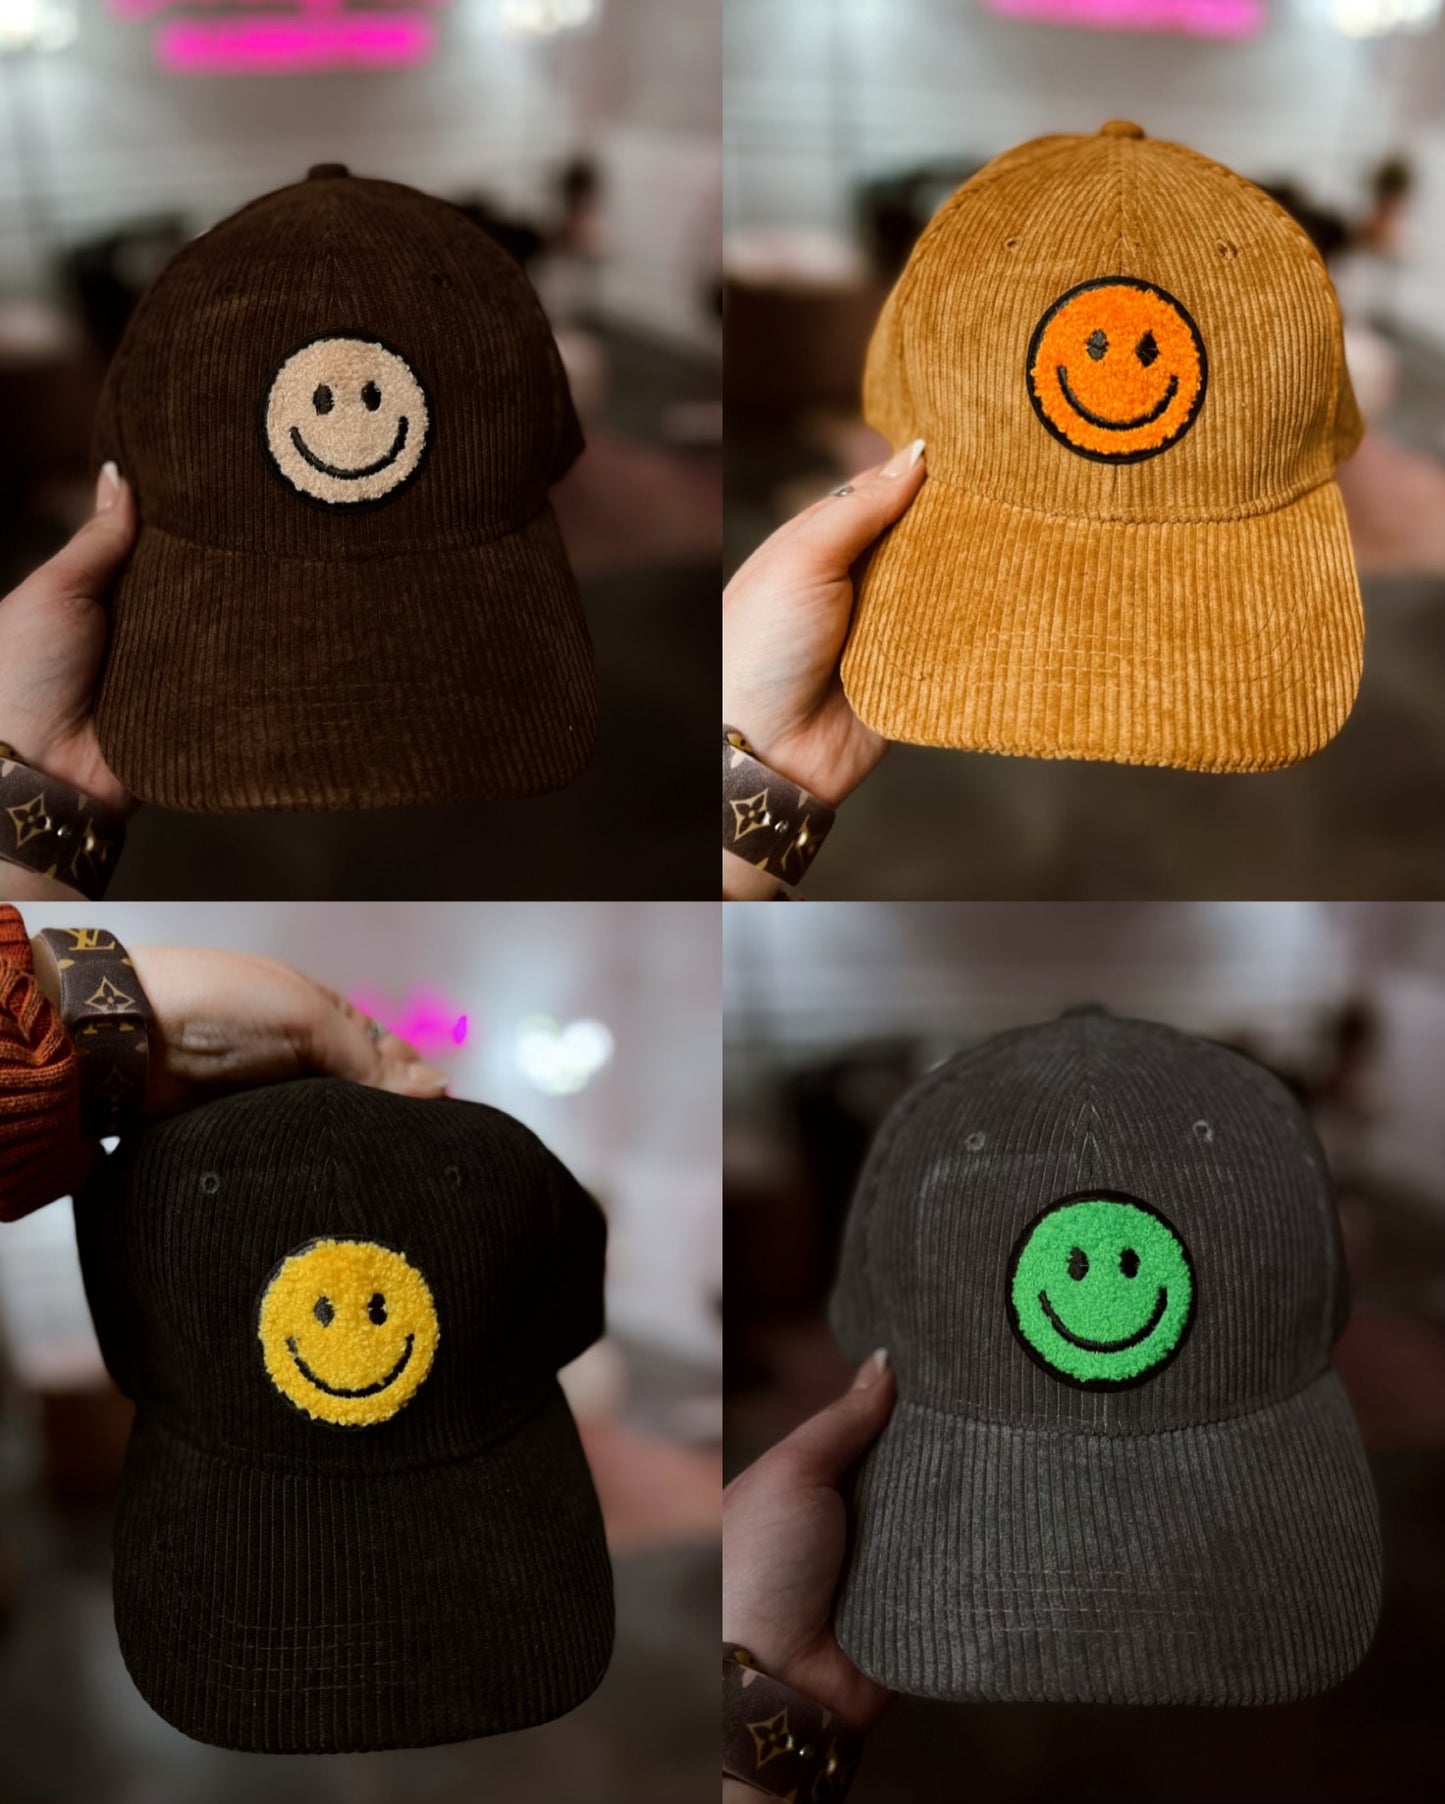 CORDUROY SMILEY HATS